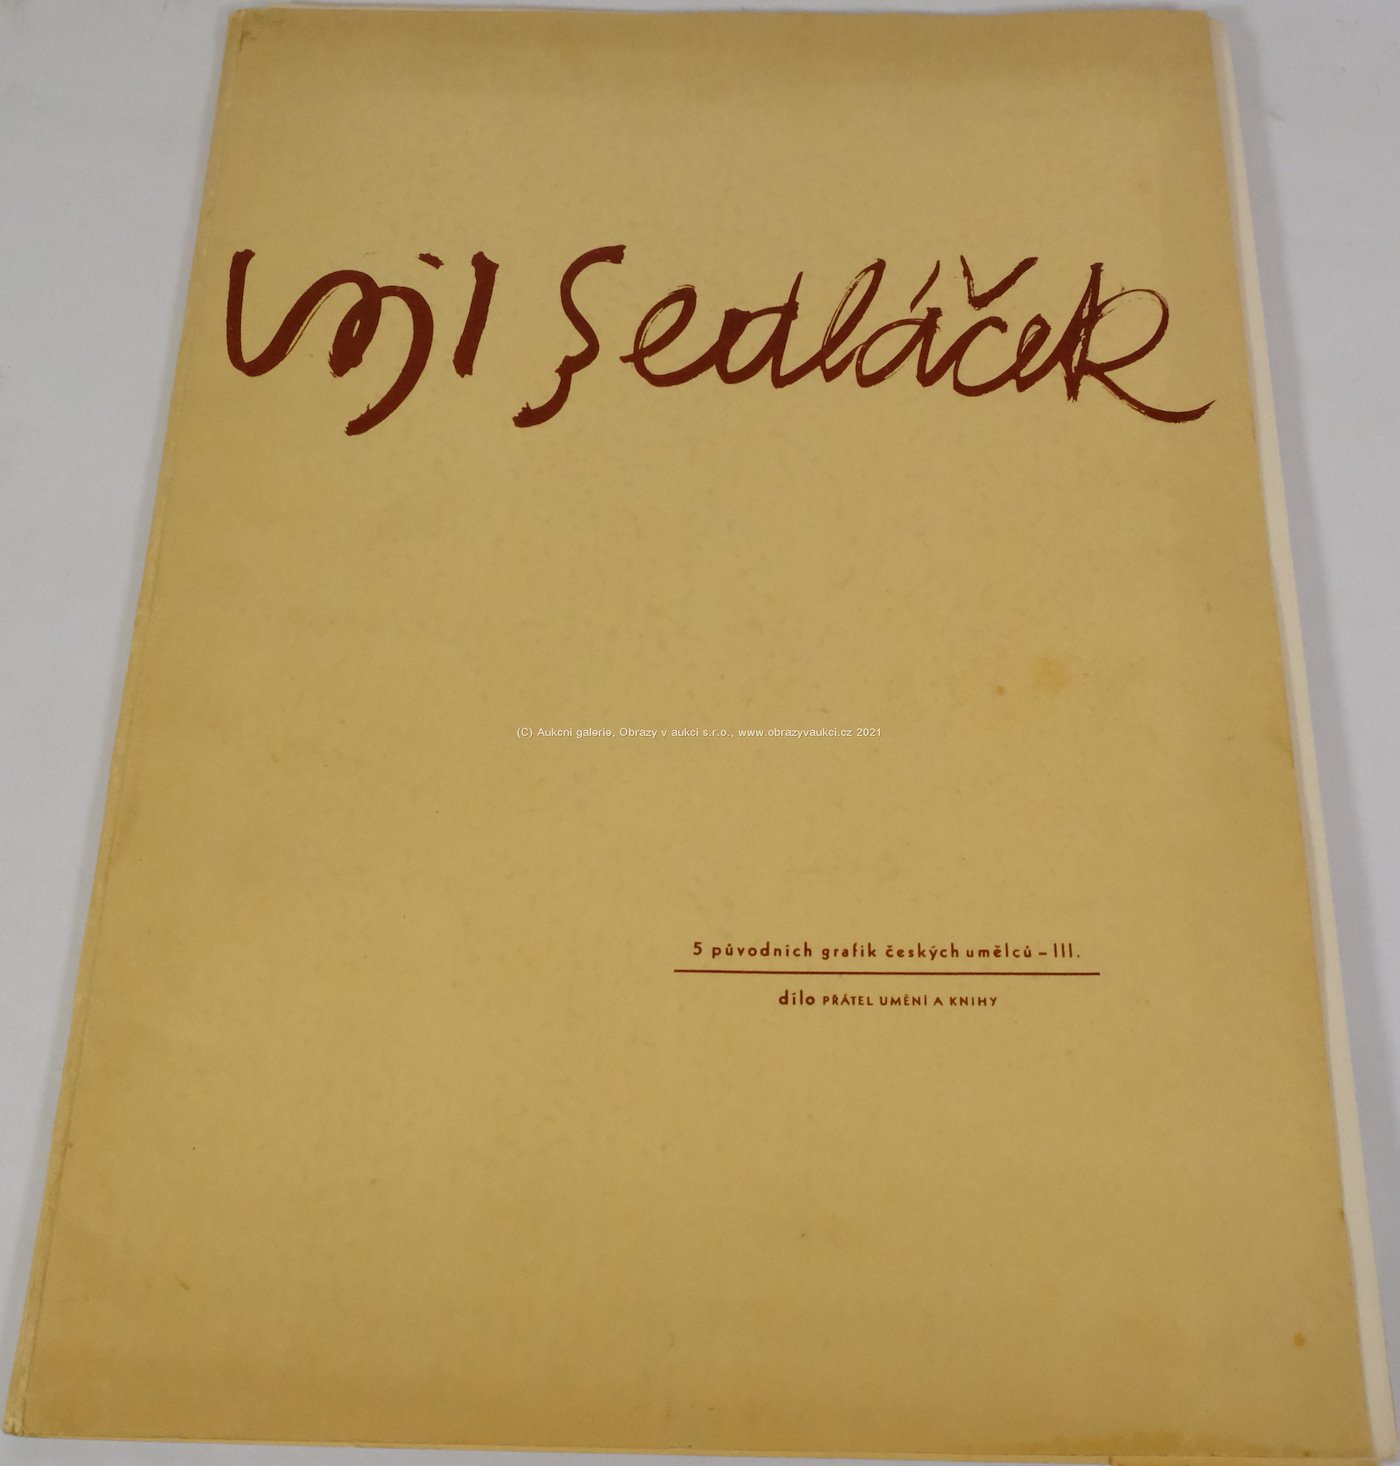 Vojtěch Sedláček - 5 původních grafik českých umělců, sv. III.